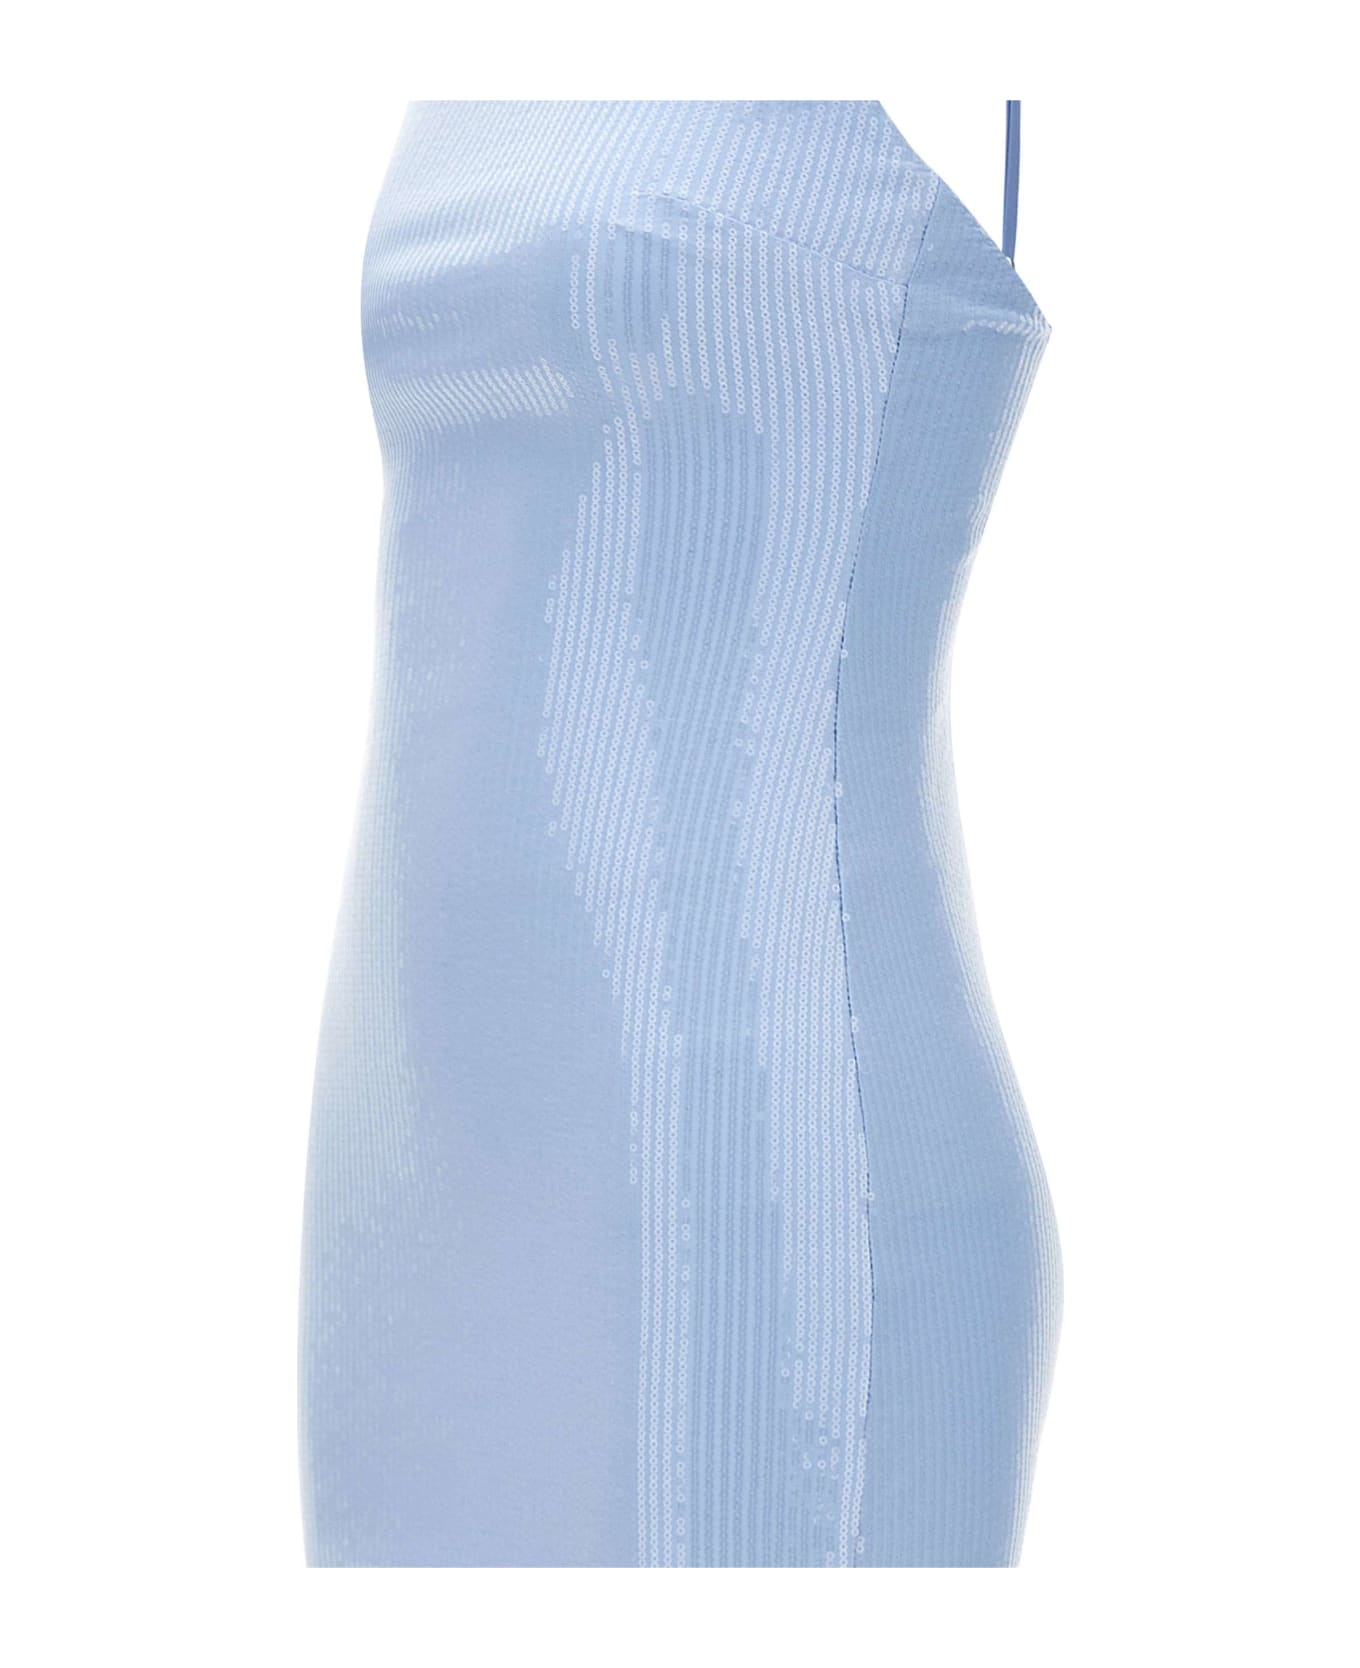 Rotate by Birger Christensen "sequins Slip" Mini Dress - LIGHT BLUE